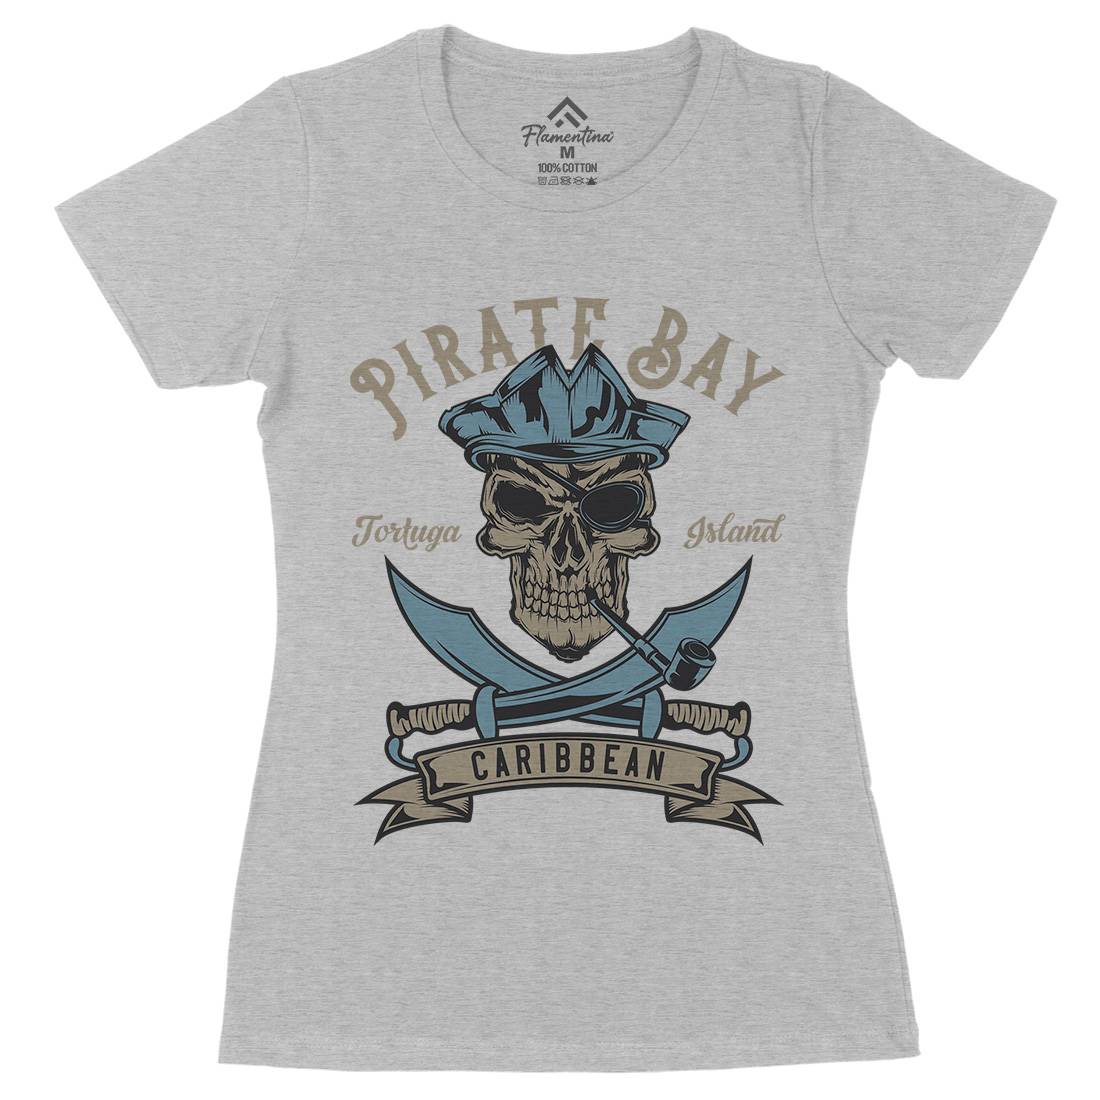 Pirate Womens Organic Crew Neck T-Shirt Navy B165